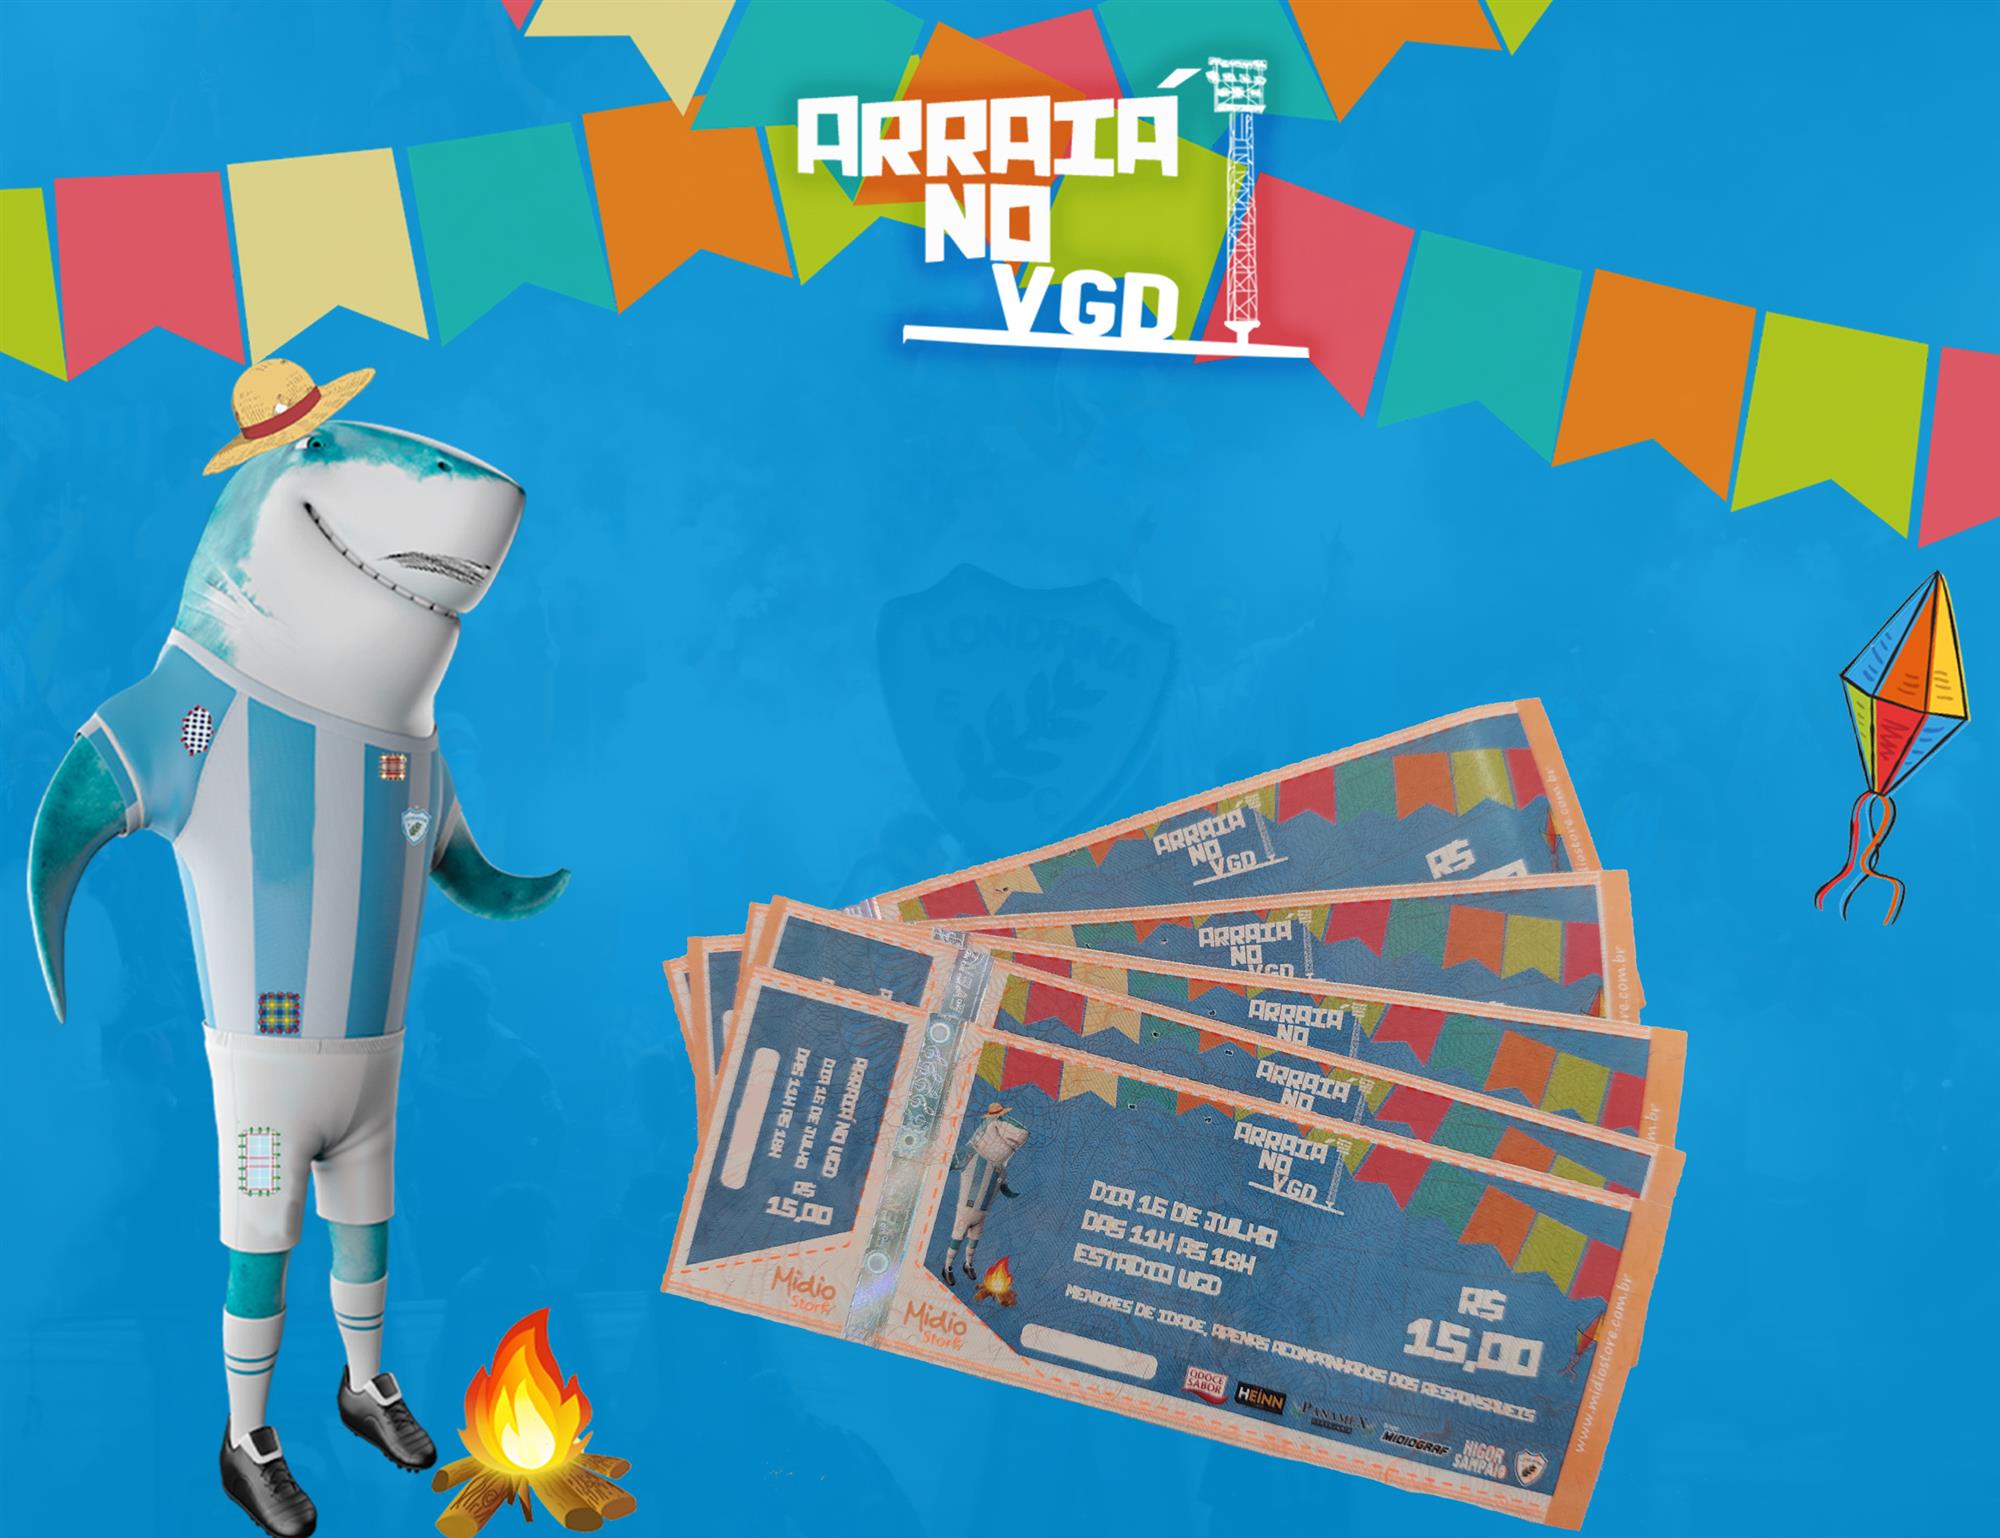 Londrina inicia venda do 1º lote de ingressos para o Arraiá no VGD